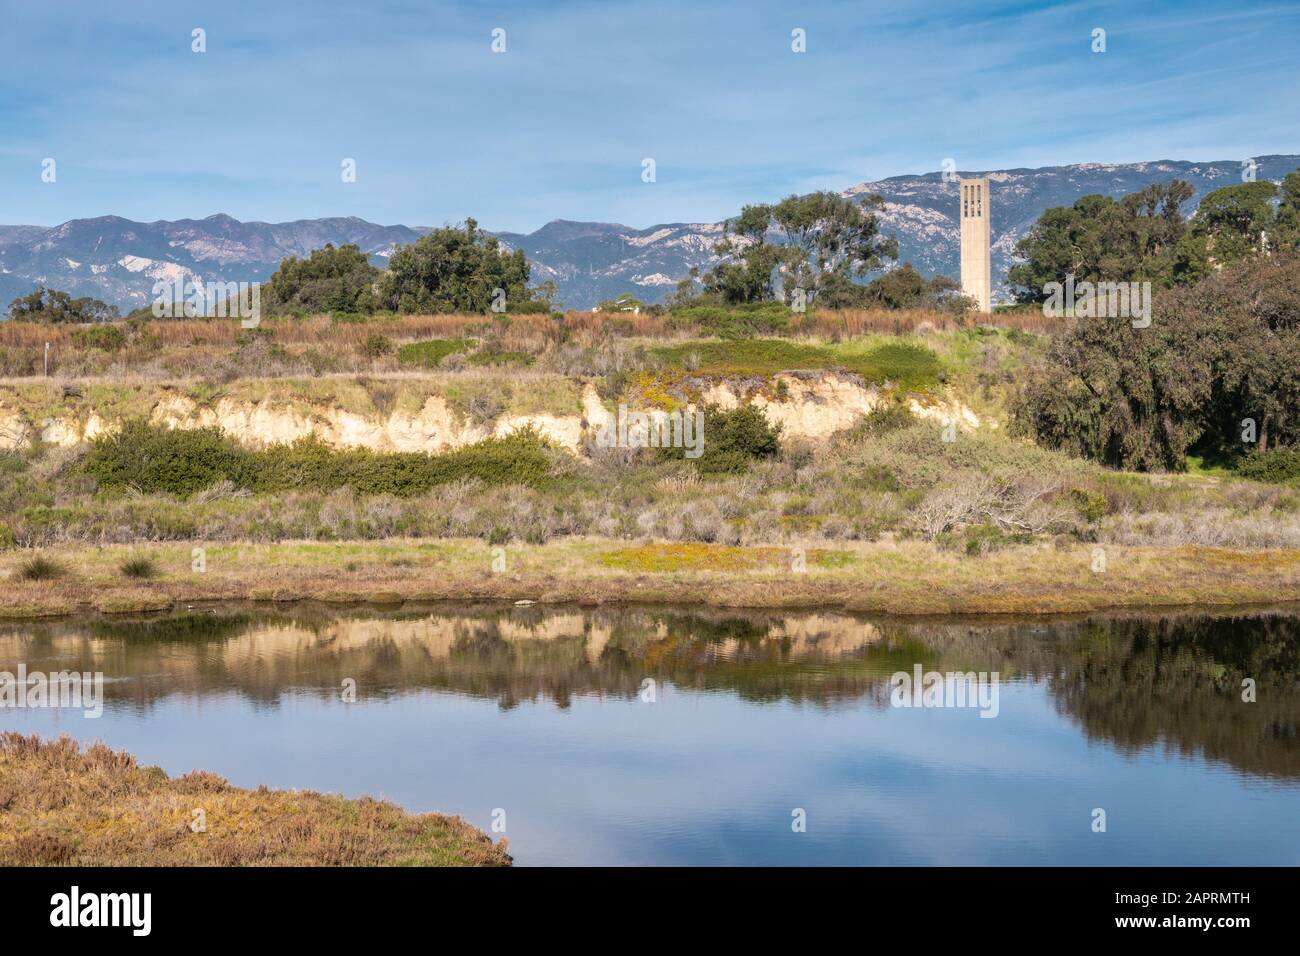 Goleta, CA, États-Unis - 2 janvier 2020: UCSB, Université California Santa Barbara. La tour de la cloche est jouée au-dessus des dunes et de la végétation verte entourant Campus Lago Banque D'Images